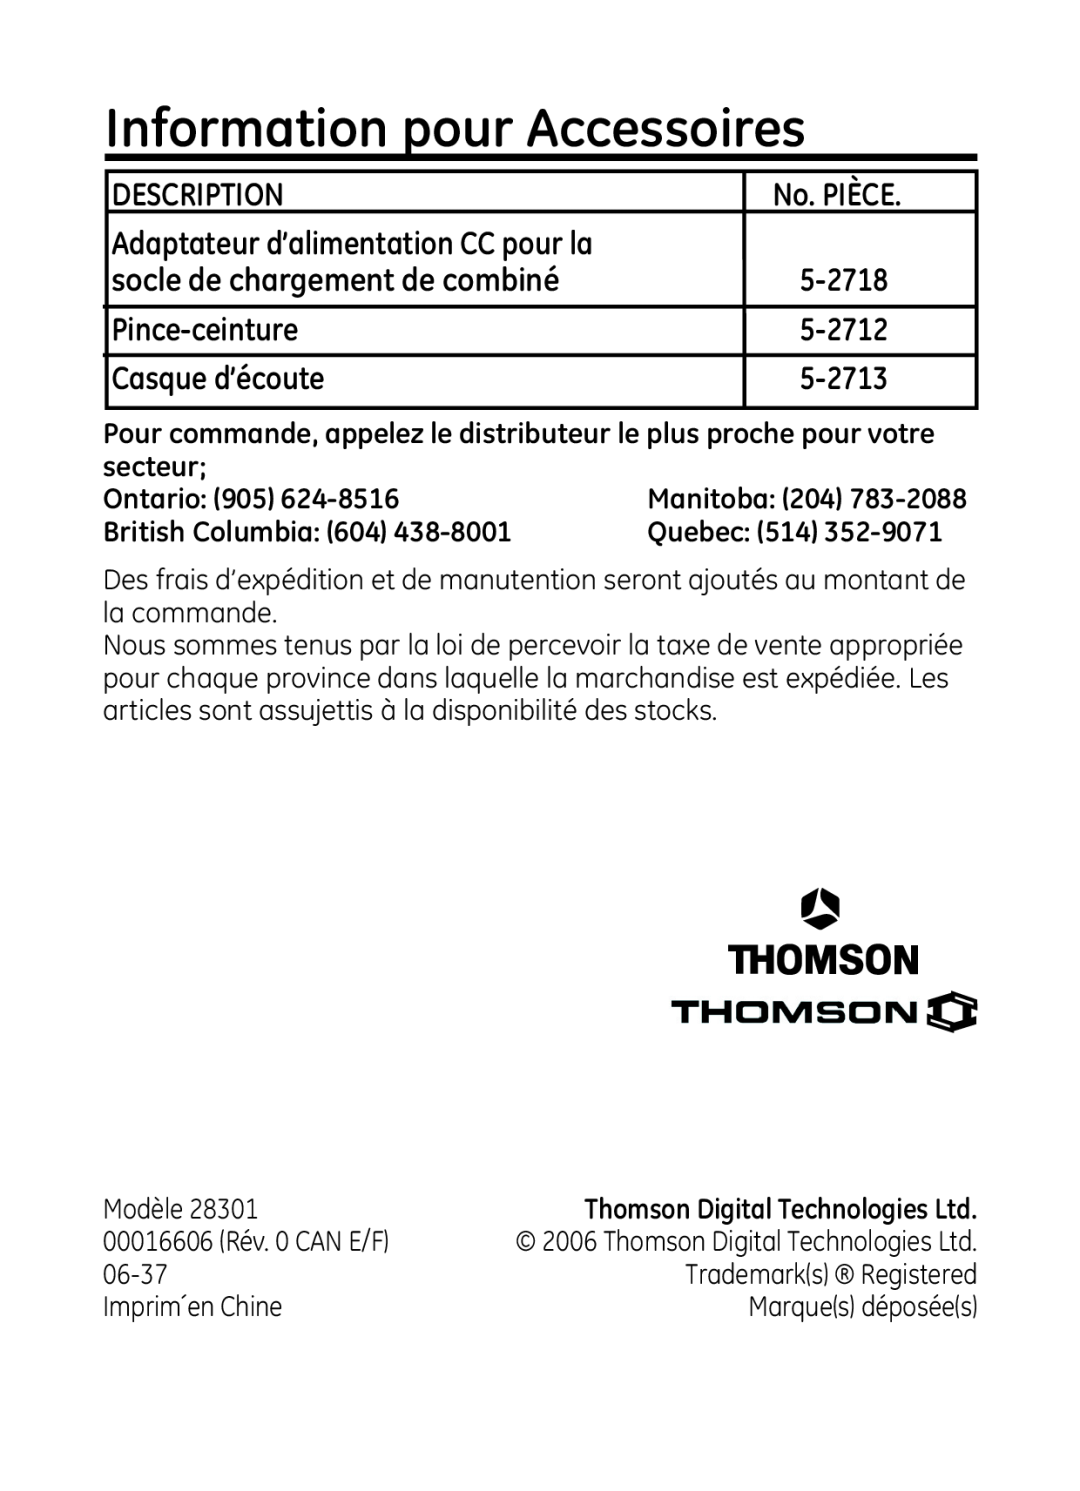 GE 28301 manual Information pour Accessoires, Description, No. PIÈCE, Adaptateur d’alimentation CC pour la, 5-2718, 5-2712 